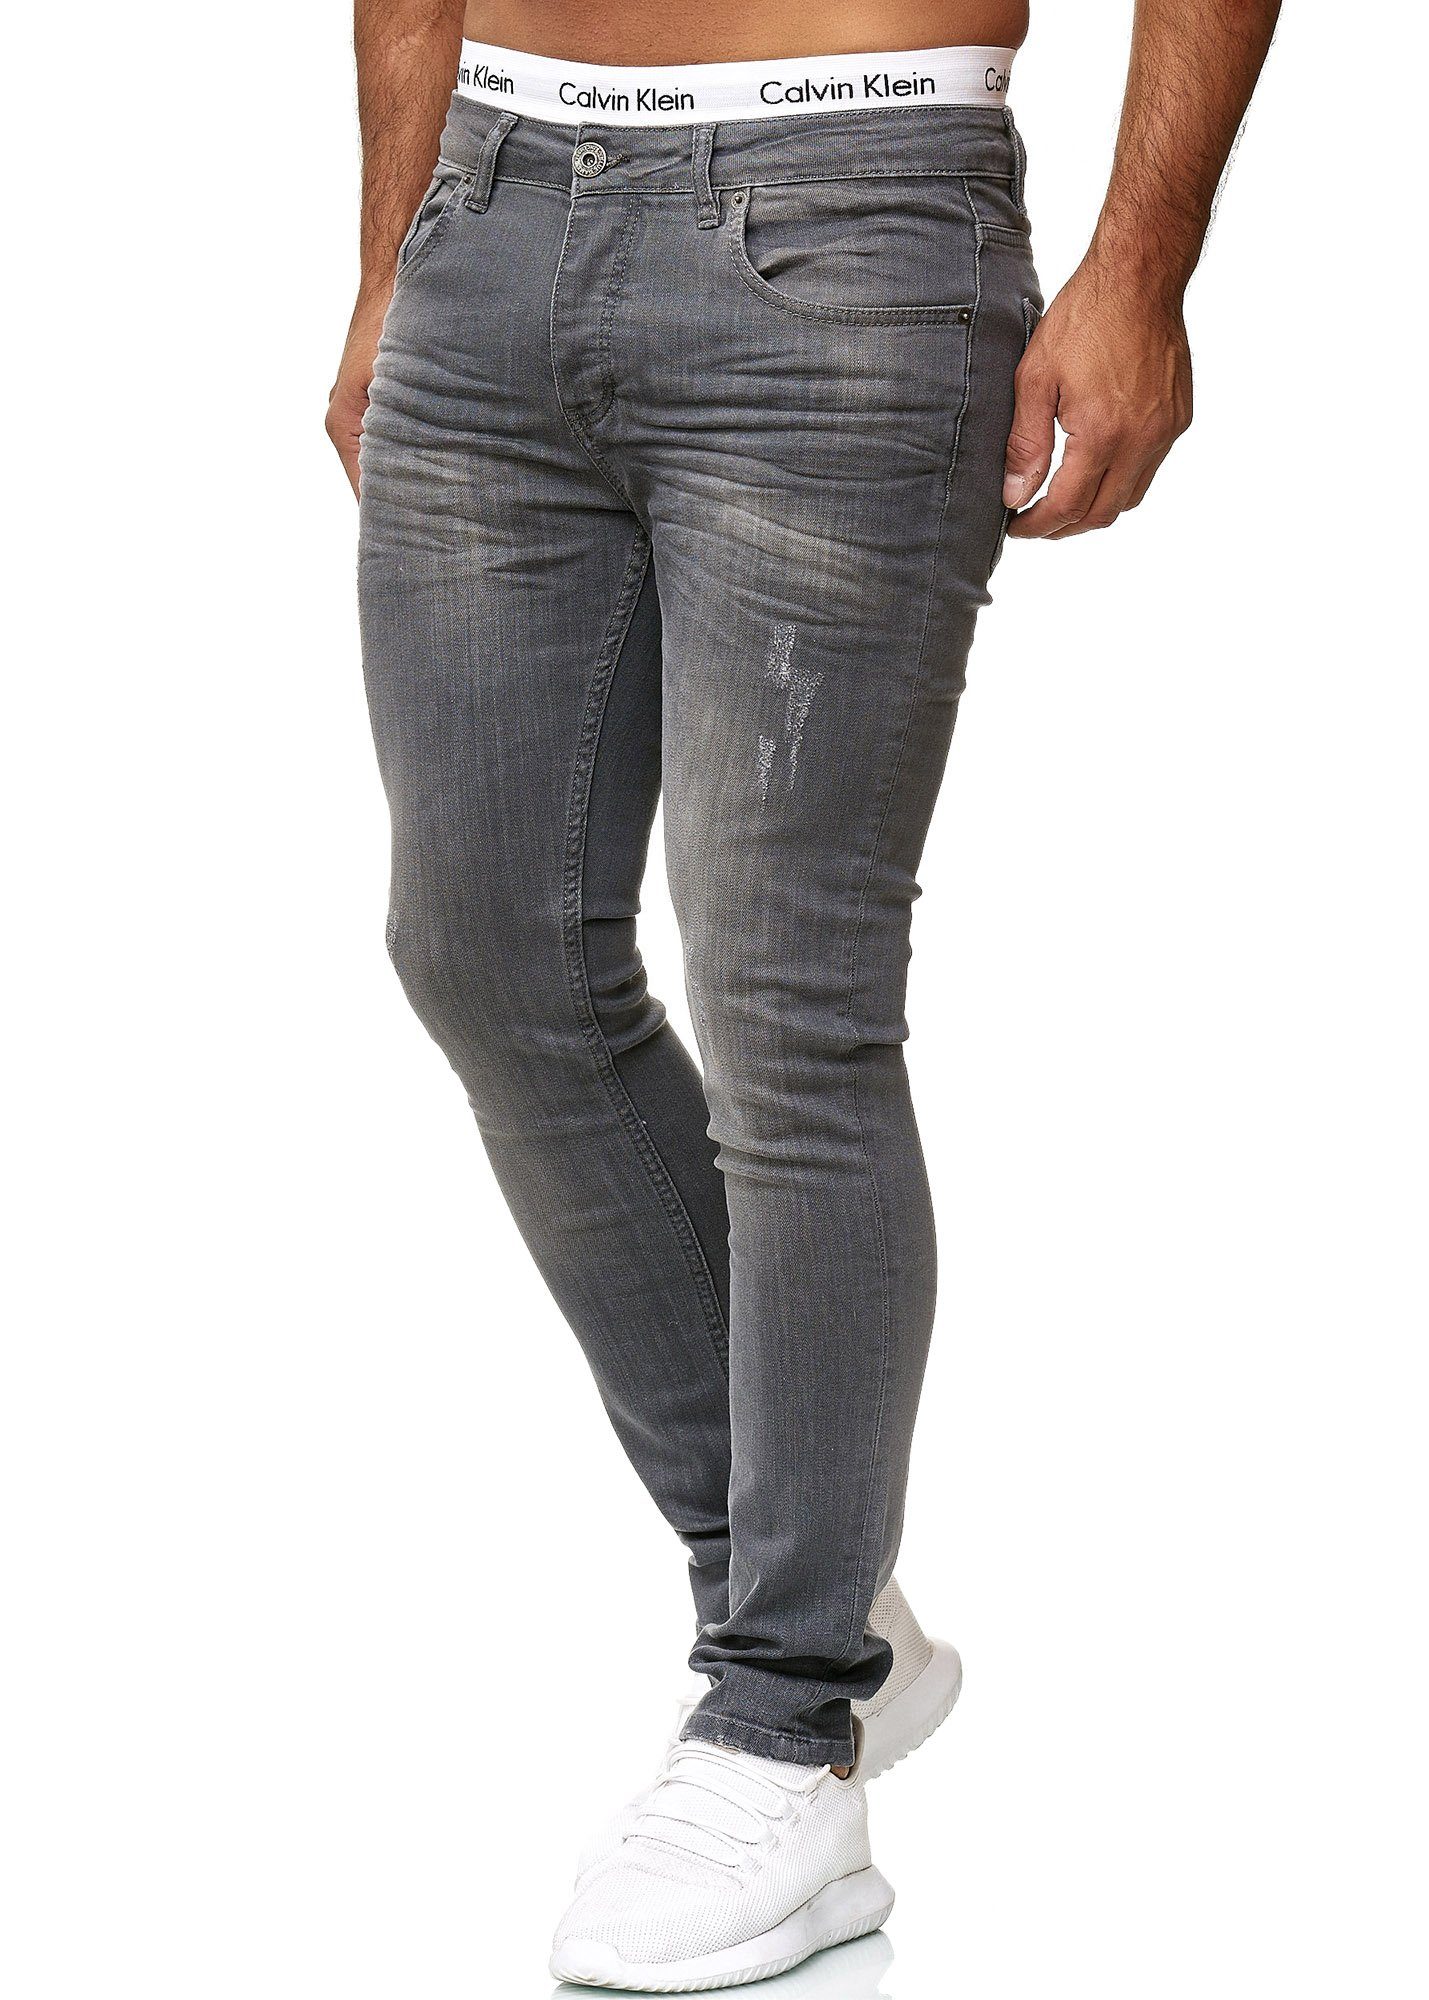 Steel Designer Fit Grey Regular Basic Jeanshose Skinny-fit-Jeans 609 Code47 Hose Jeans Skinny Used Code47 Herren